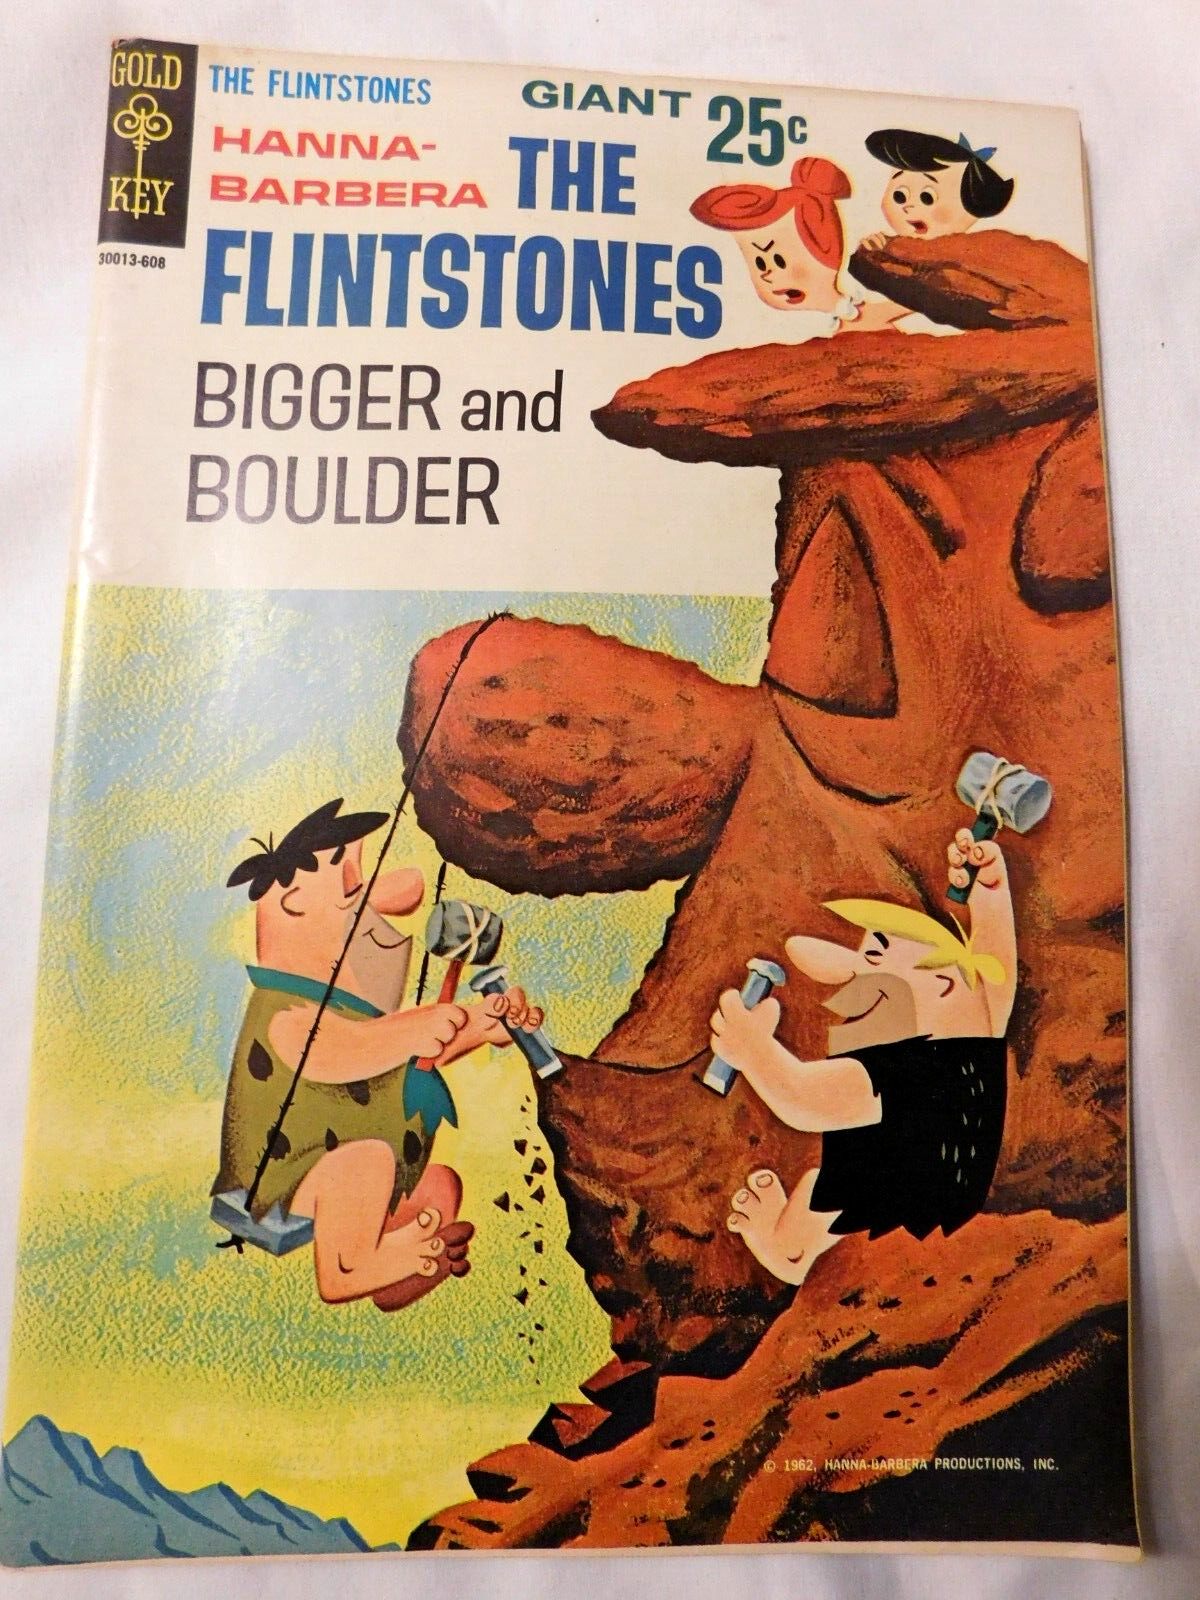 THE FLINTSTONES BIGGER AND BOULDER NO. #2 GOLD KEY COMIC BOOK 1962